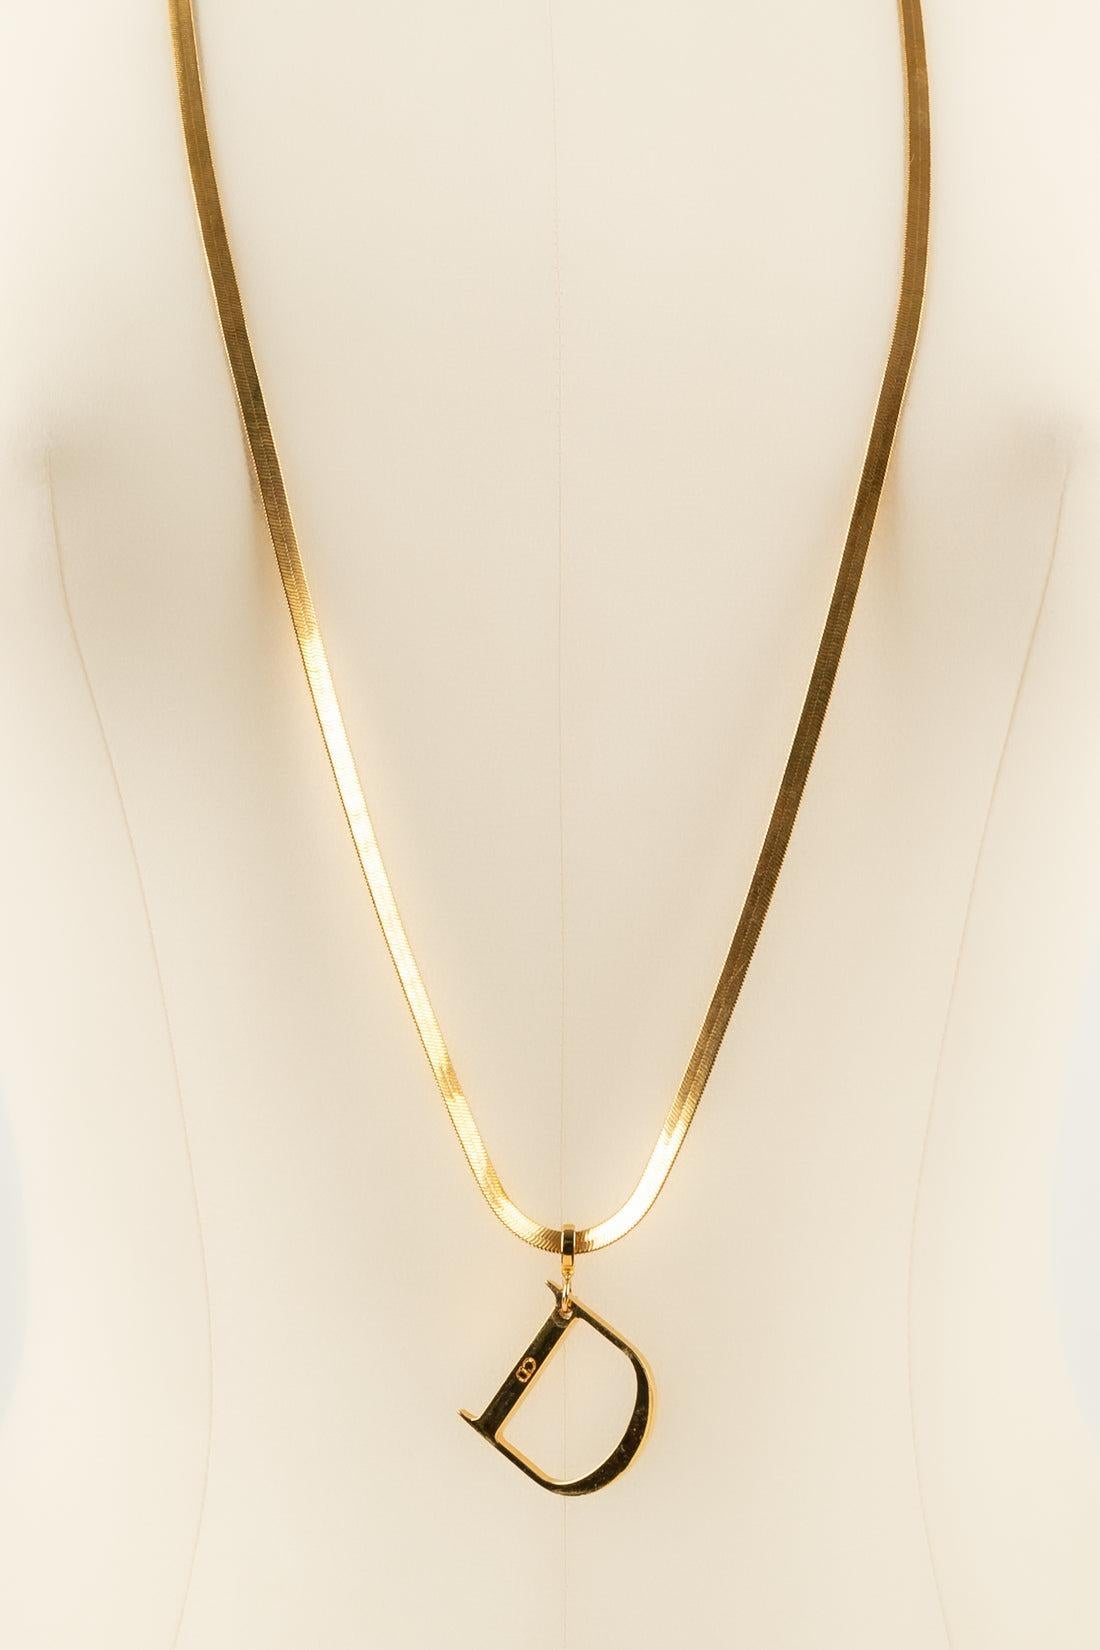 Christian Dior, collier à 3 chaînes en métal plaqué or Excellent état à SAINT-OUEN-SUR-SEINE, FR